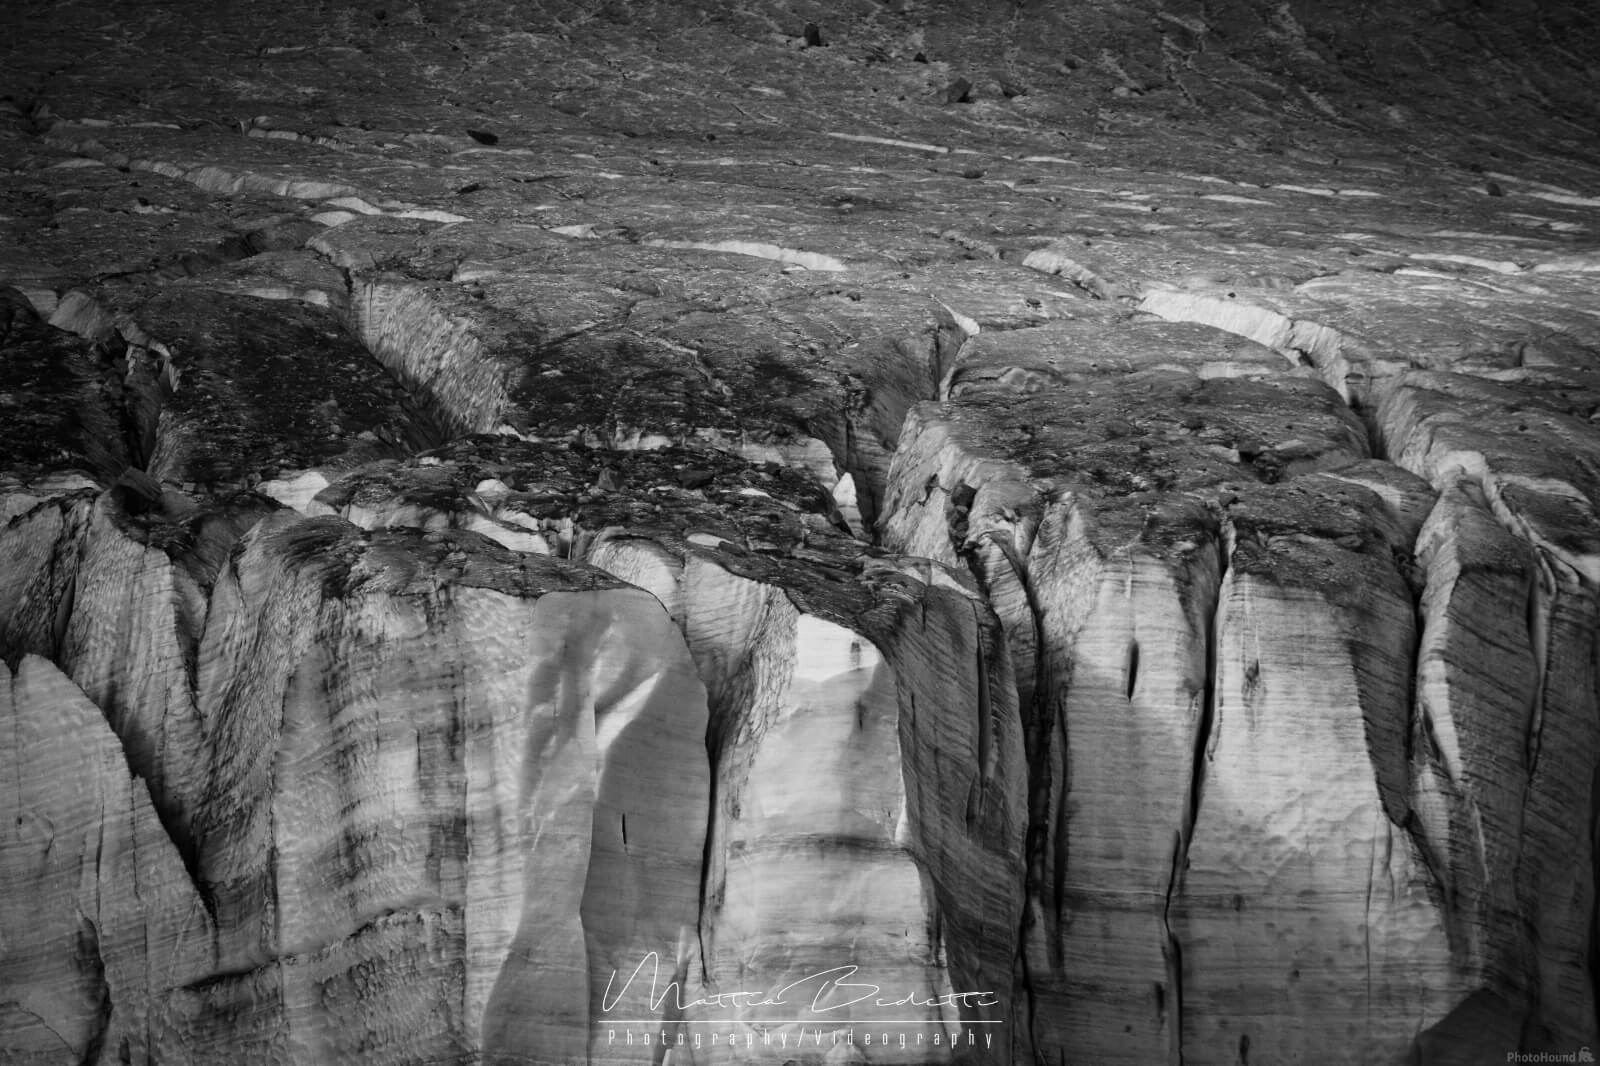 Image of Eastern Fellaria Glacier by Mattia Bedetti